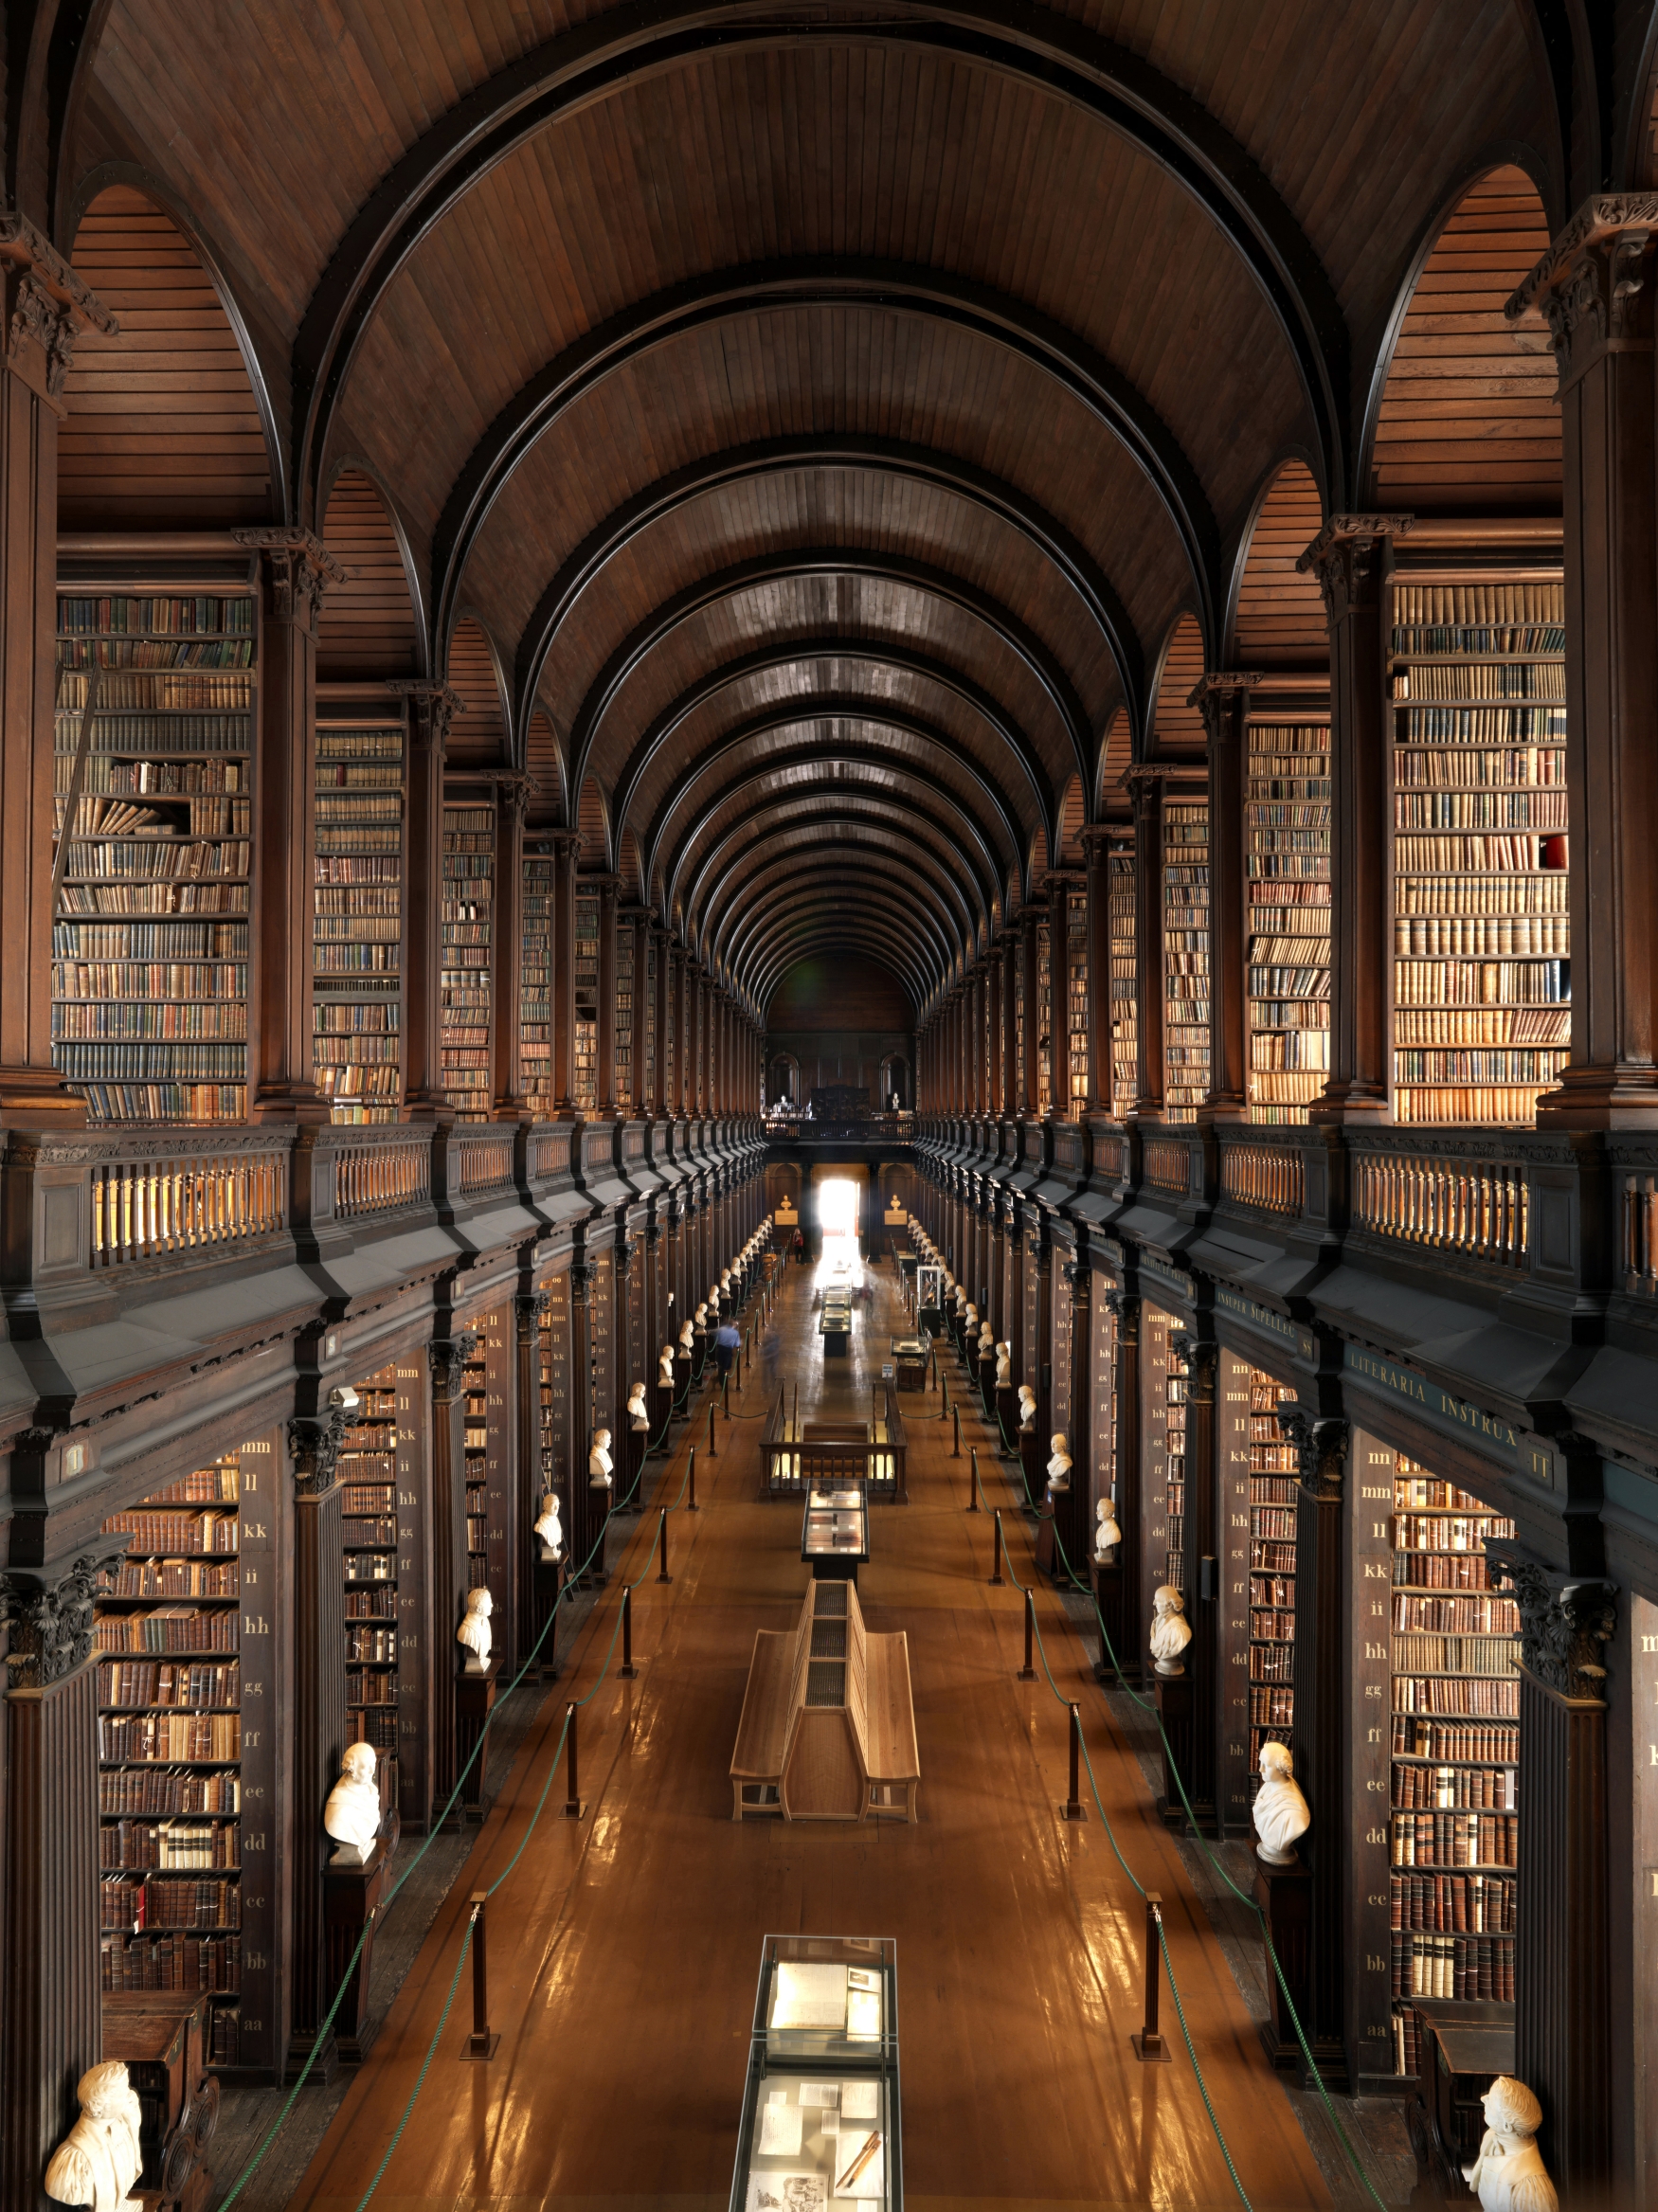 Picture library. Тринити колледж Дублин. Библиотека Тринити-колледжа, Дублин, Ирландия. Библиотека Тринити-колледжа в Дублине. Тринити-колледж в Дублине, Ирландия.